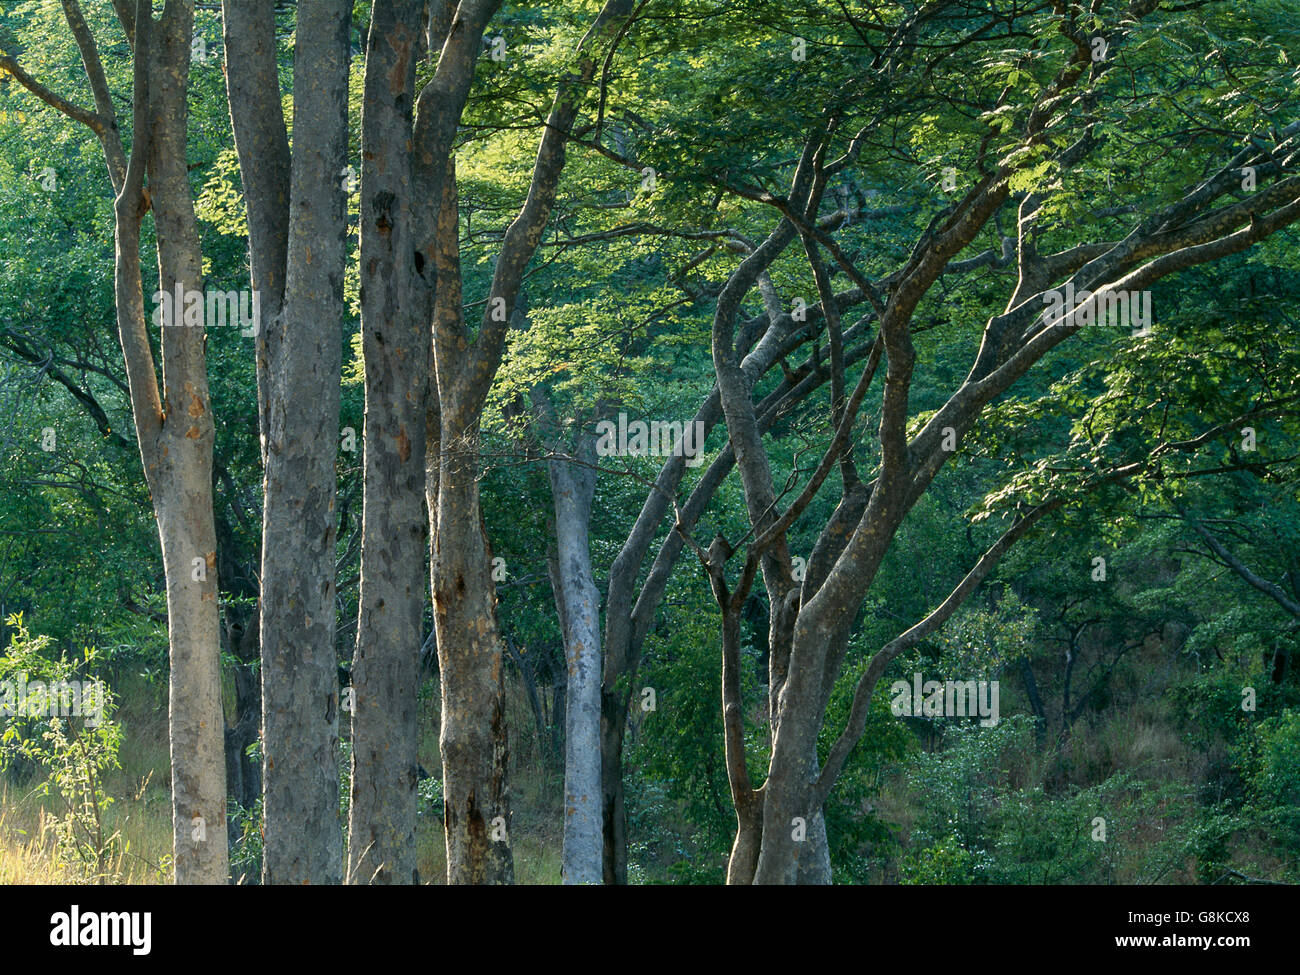 Arbres dans un parc Chizarira, forêt de l'escarpement du Zambèze, au Zimbabwe. Banque D'Images